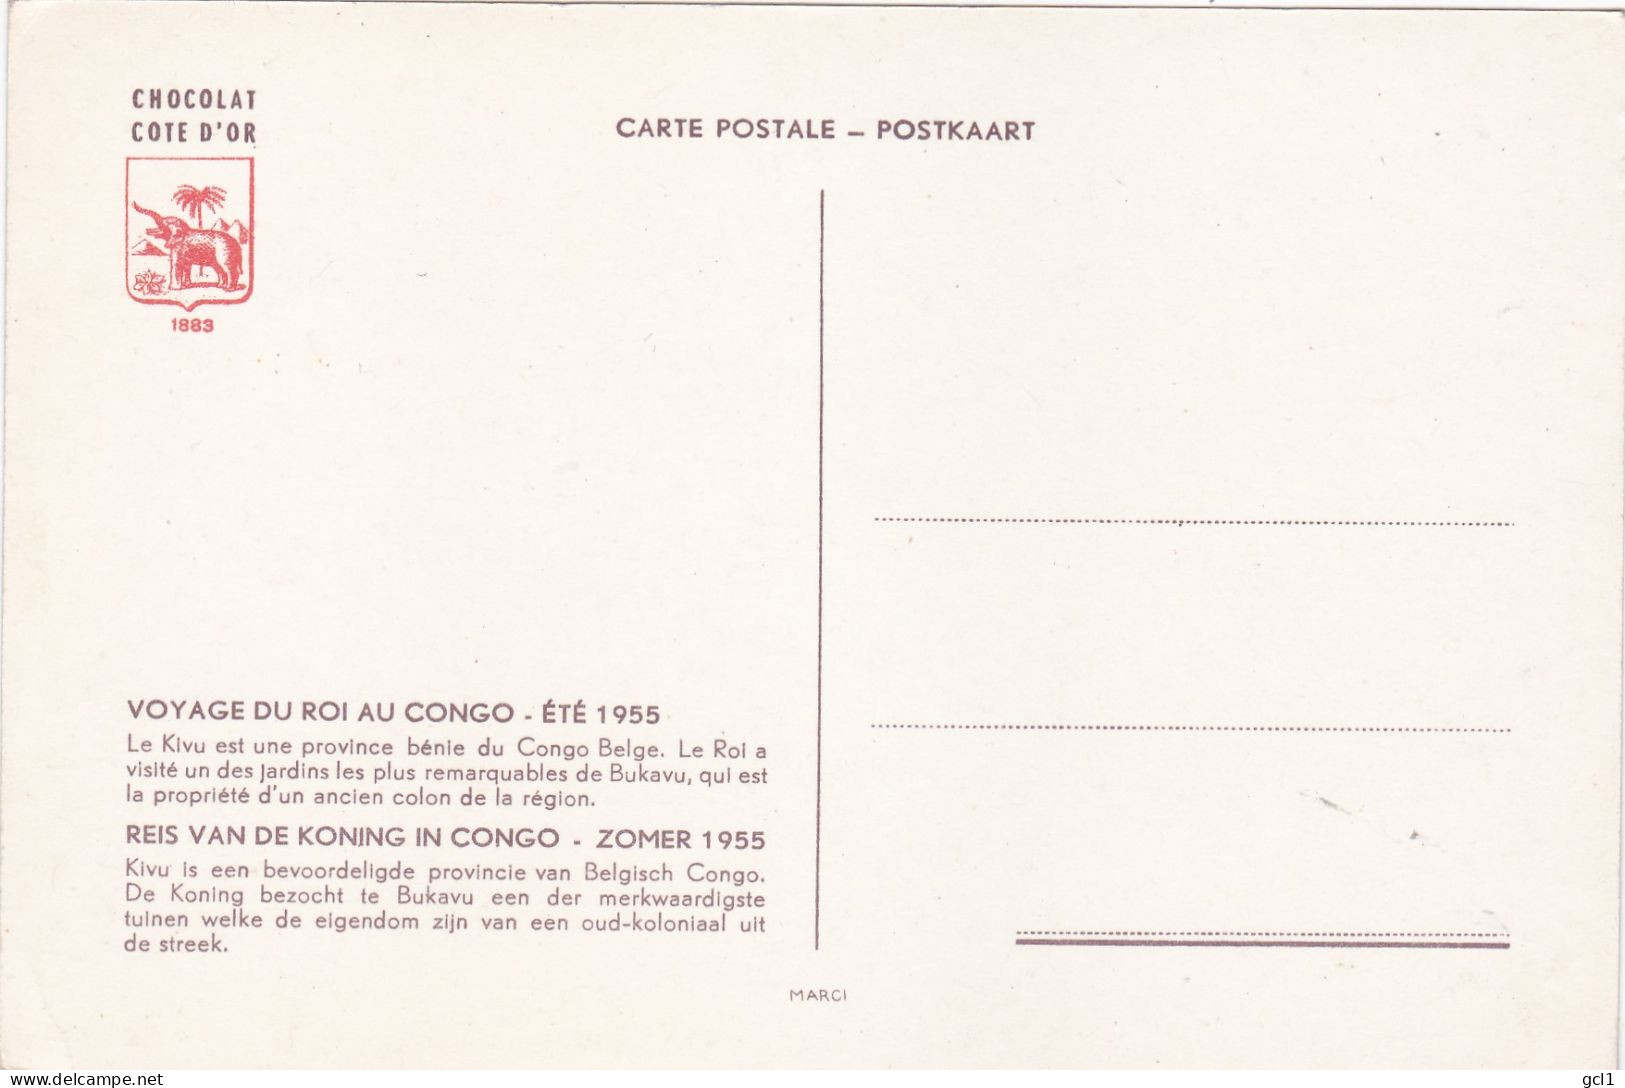 Reis van de koning in Congo -Zomer 1955 - 15 stuks van Cote D' or Chocolade